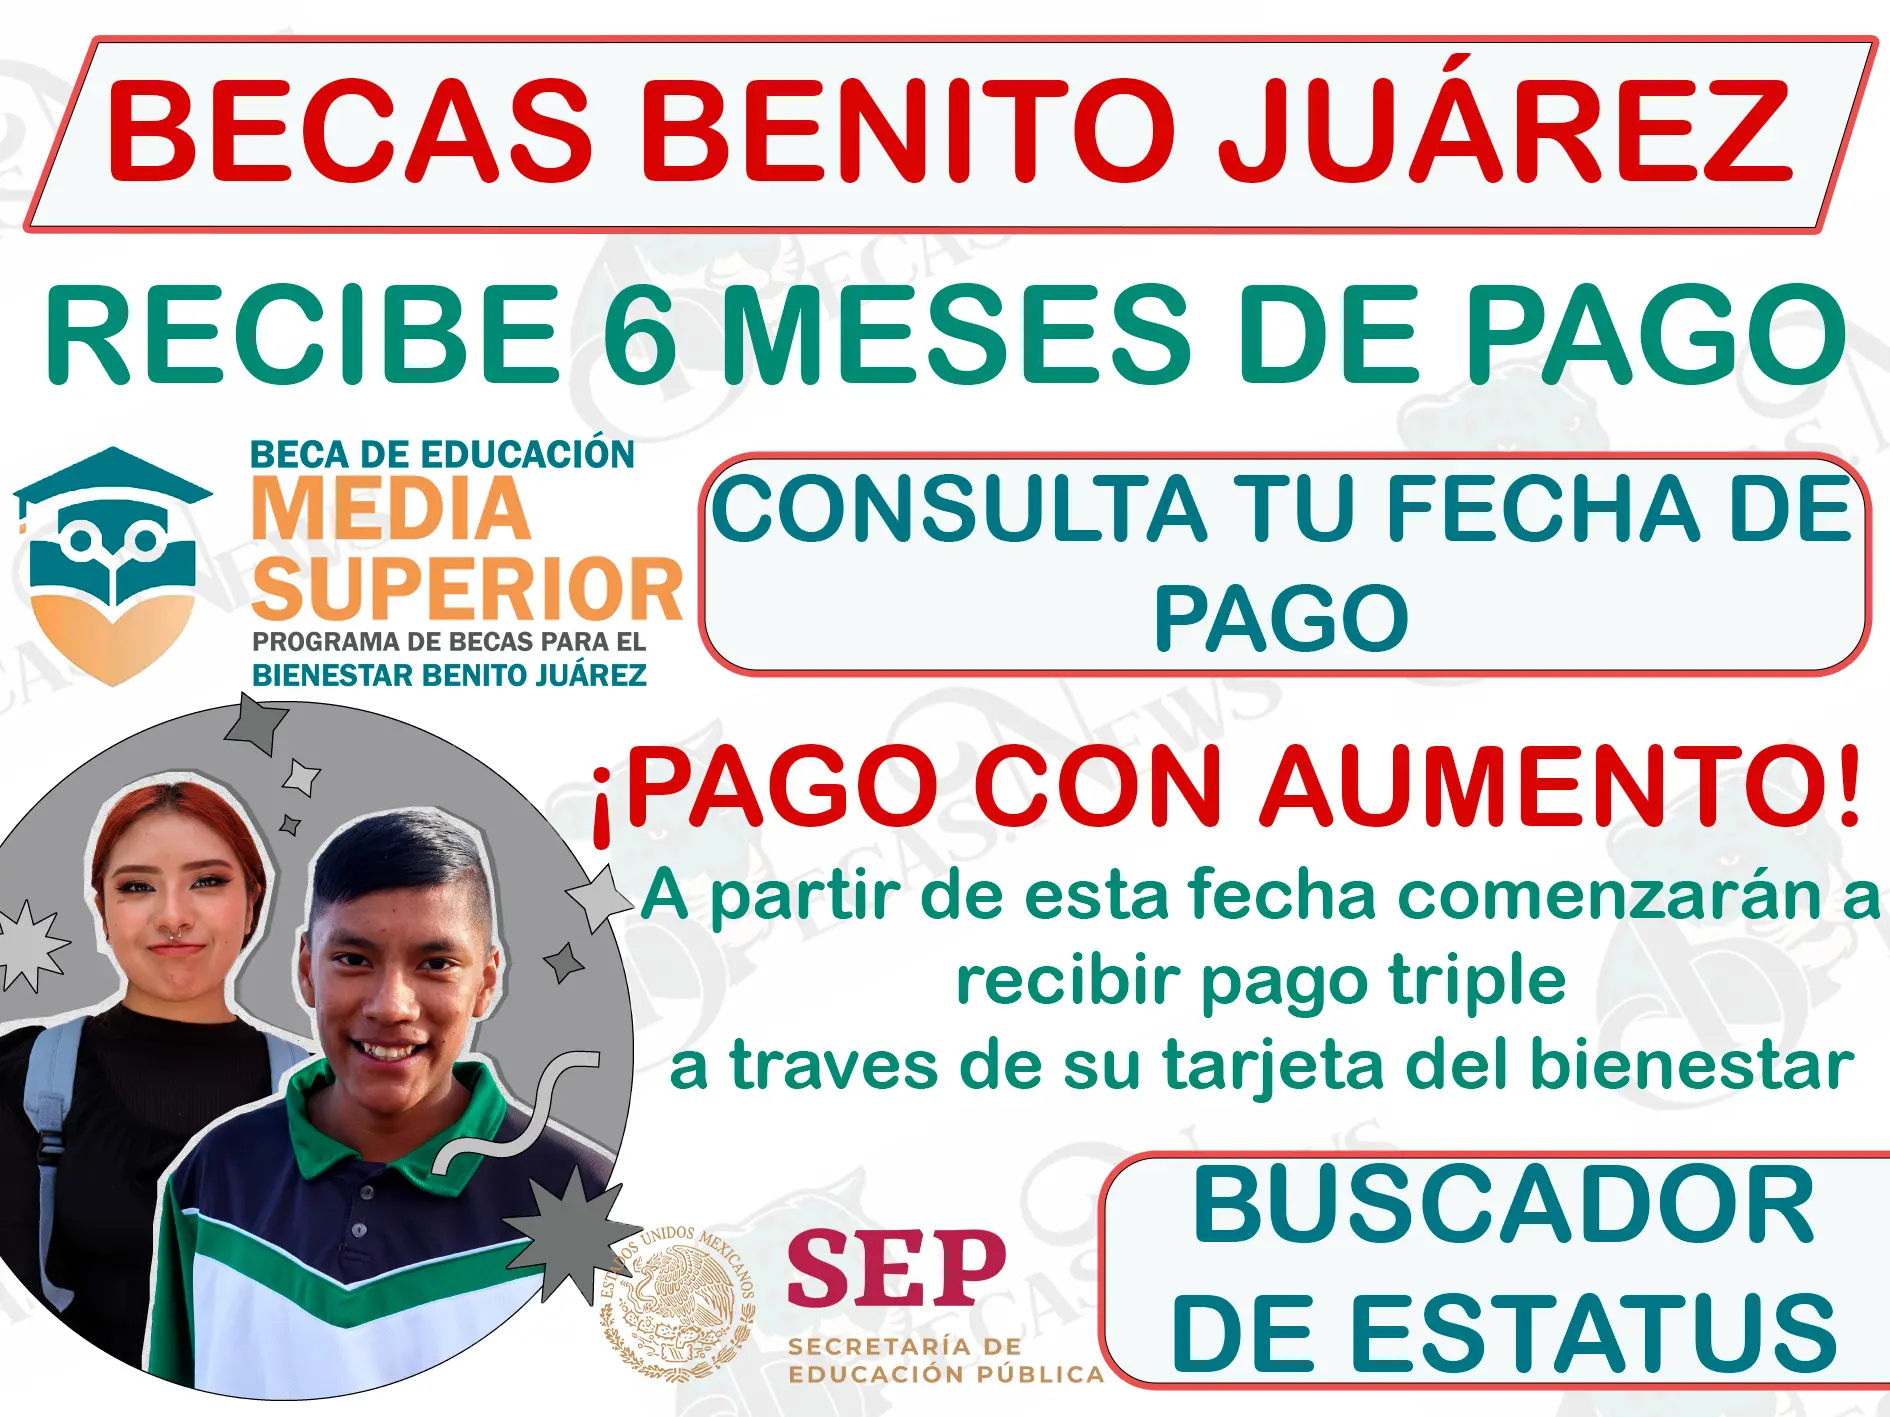 Durante esta fecha recibirás 6 meses de pago: Becas Benito Juárez Nivel Media Superior